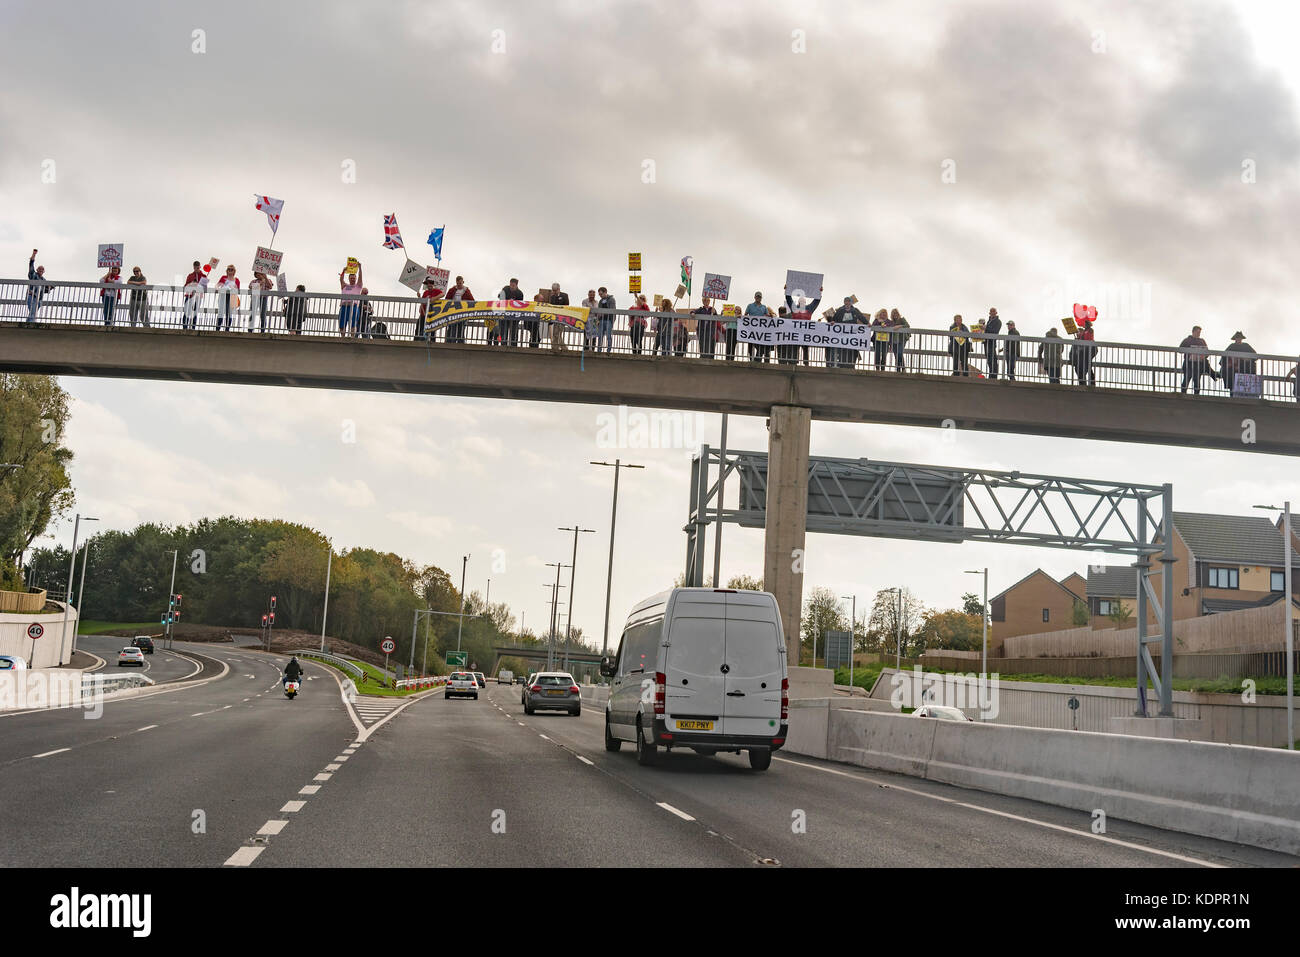 Runcorn. Vereinigtes Königreich. 15. Oktober. 2017. Demonstranten auf einer Brücke über die Zufahrtsstraße für die neue Mersey Gateway Bridge über den Fluss Mersey auf dem ersten Wochenende für den Verkehr. Die Brücke eröffnet um 1 Sekunde nach Mitternacht auf Oktober die 14. und es ist zu erwarten, mit 1,75 Mrd. £ kostet. Es gibt lokale Opposition auf die £ 2,00 Maut für Pkw für jede Kreuzung, die Probleme für viele, die die Brücke regelmäßig wie die alten gebührenfreien Brücke zu Nutzen verursachen könnte ofr Reparaturen geschlossen wurde. Quelle: John Davidson Fotos/Alamy Leben Nachrichten Runcorn. Vereinigtes Königreich. 15. Oktober. 2017. Quelle: John Davidson Ph Stockfoto